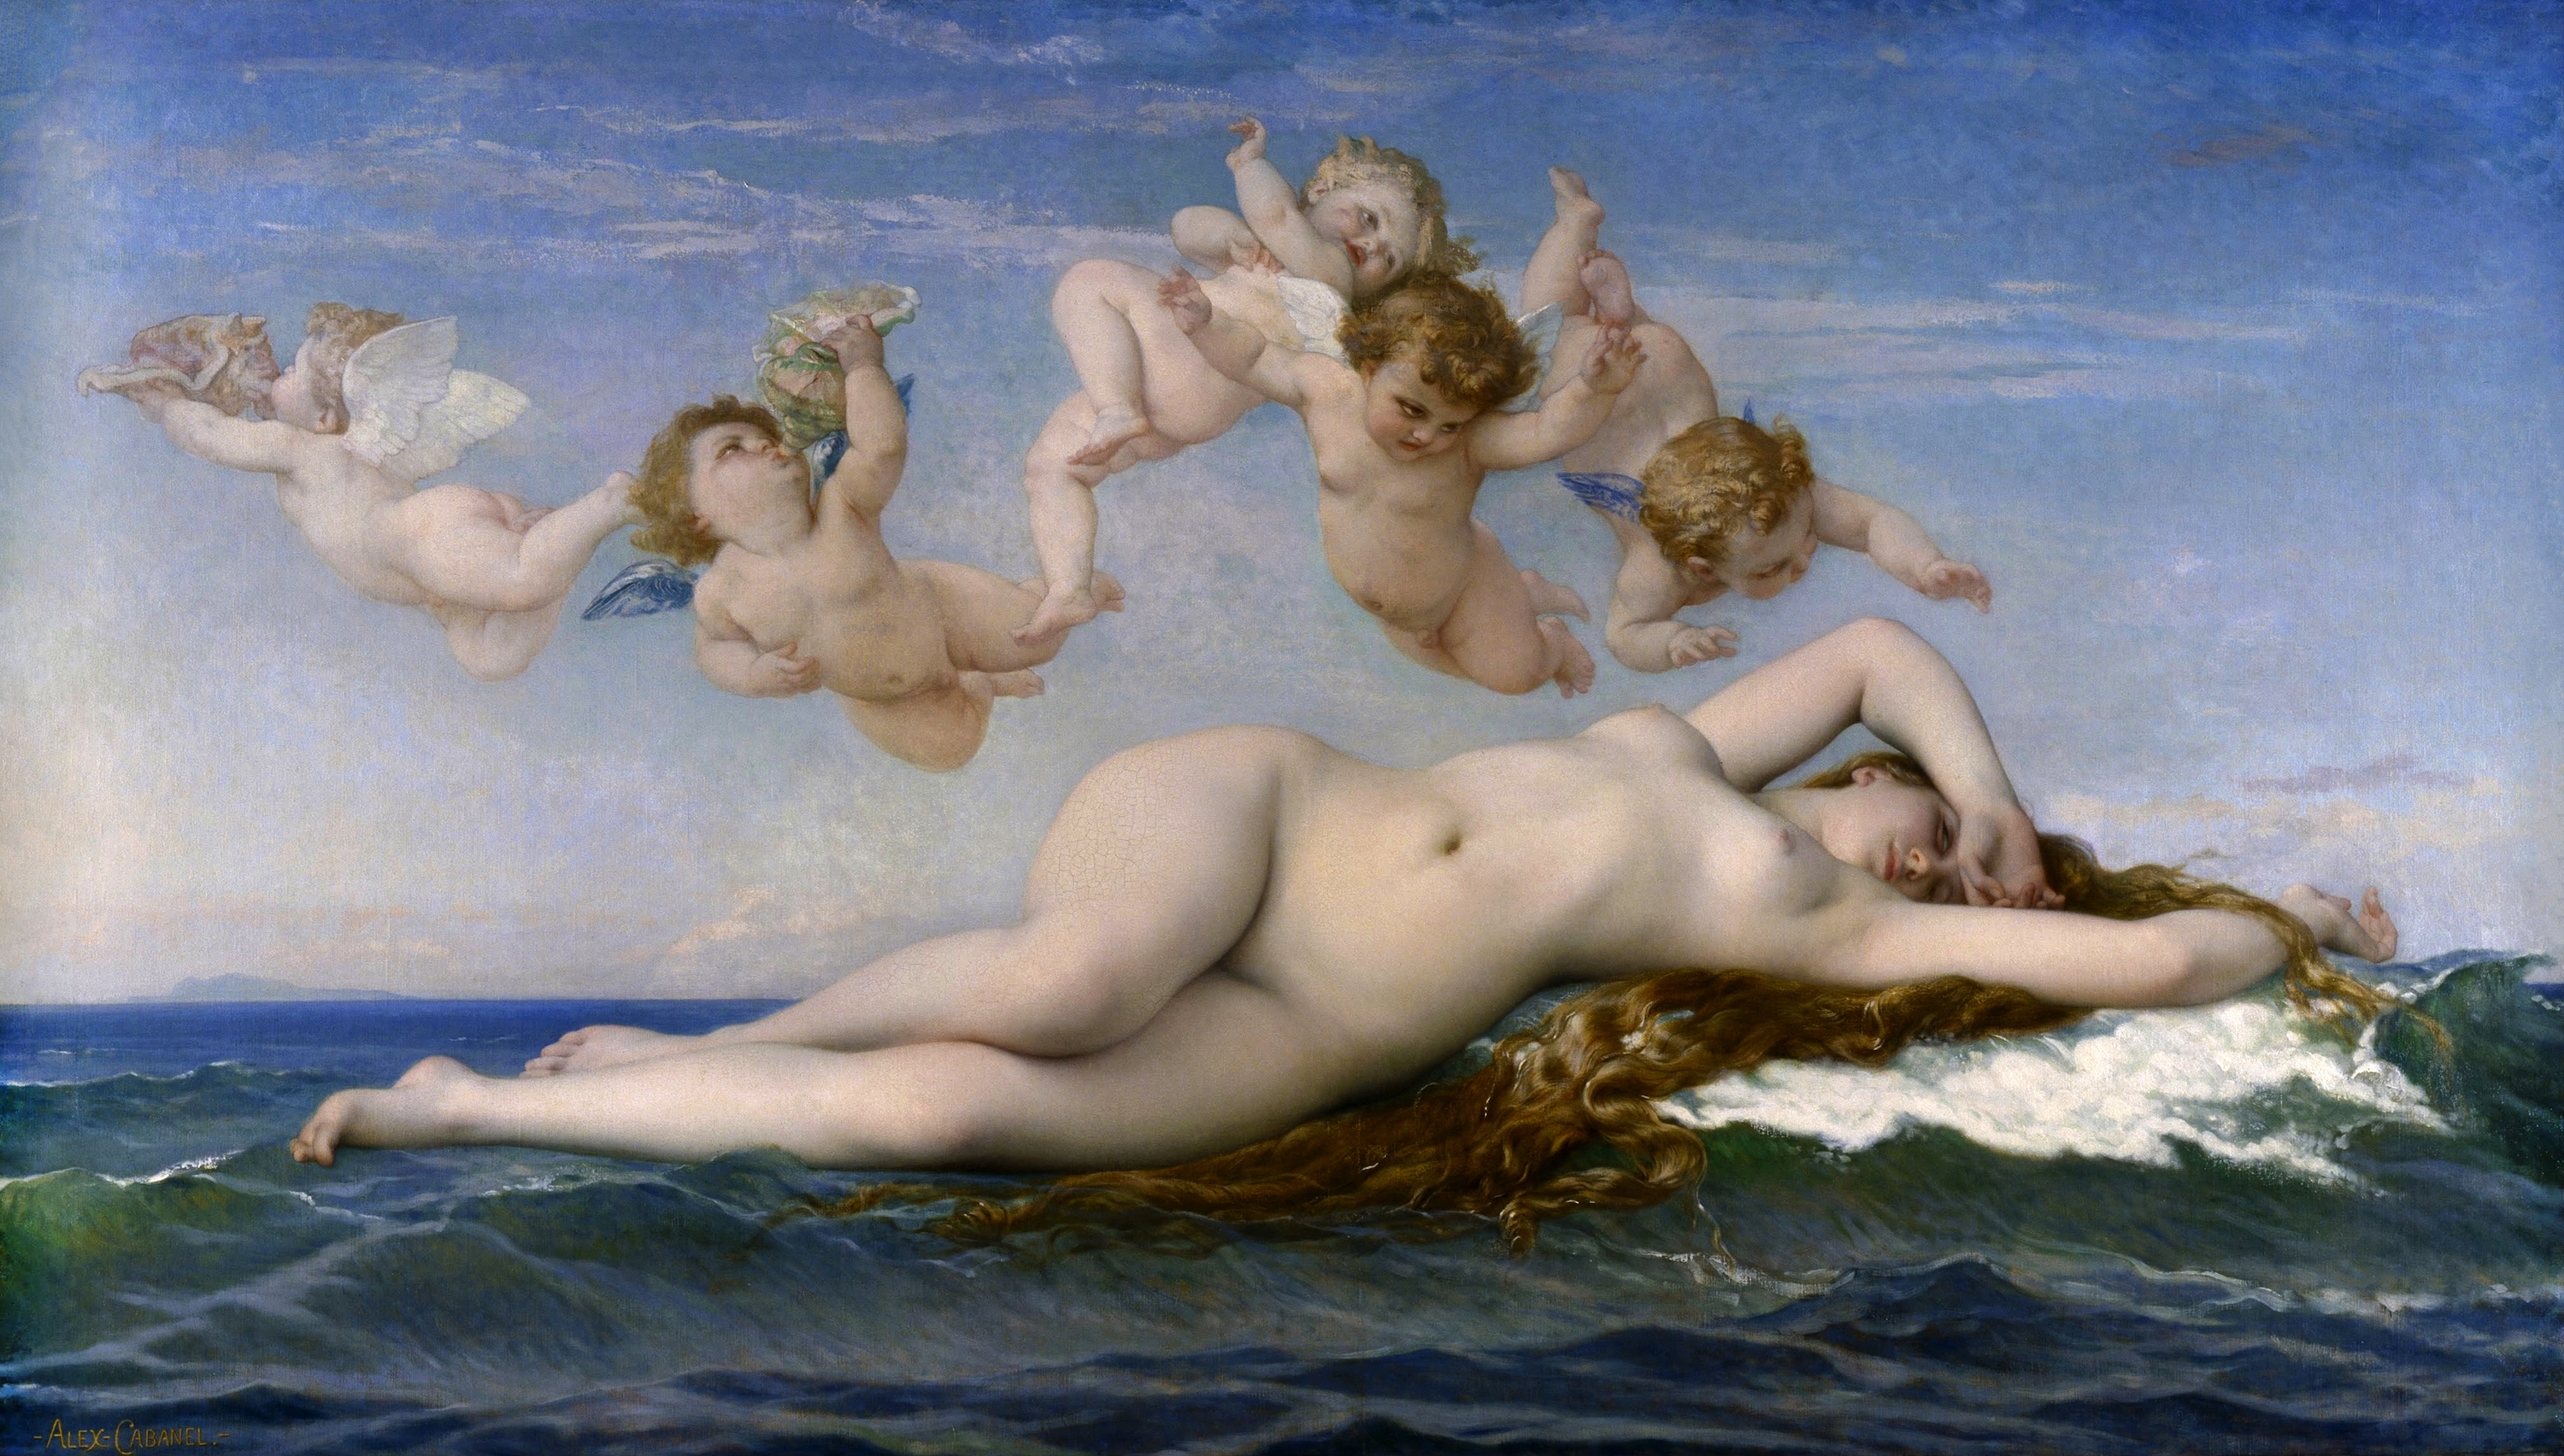 La Nascita di Venere by Alexandre Cabanel - 1863 - 130 x 225 cm Musée d'Orsay